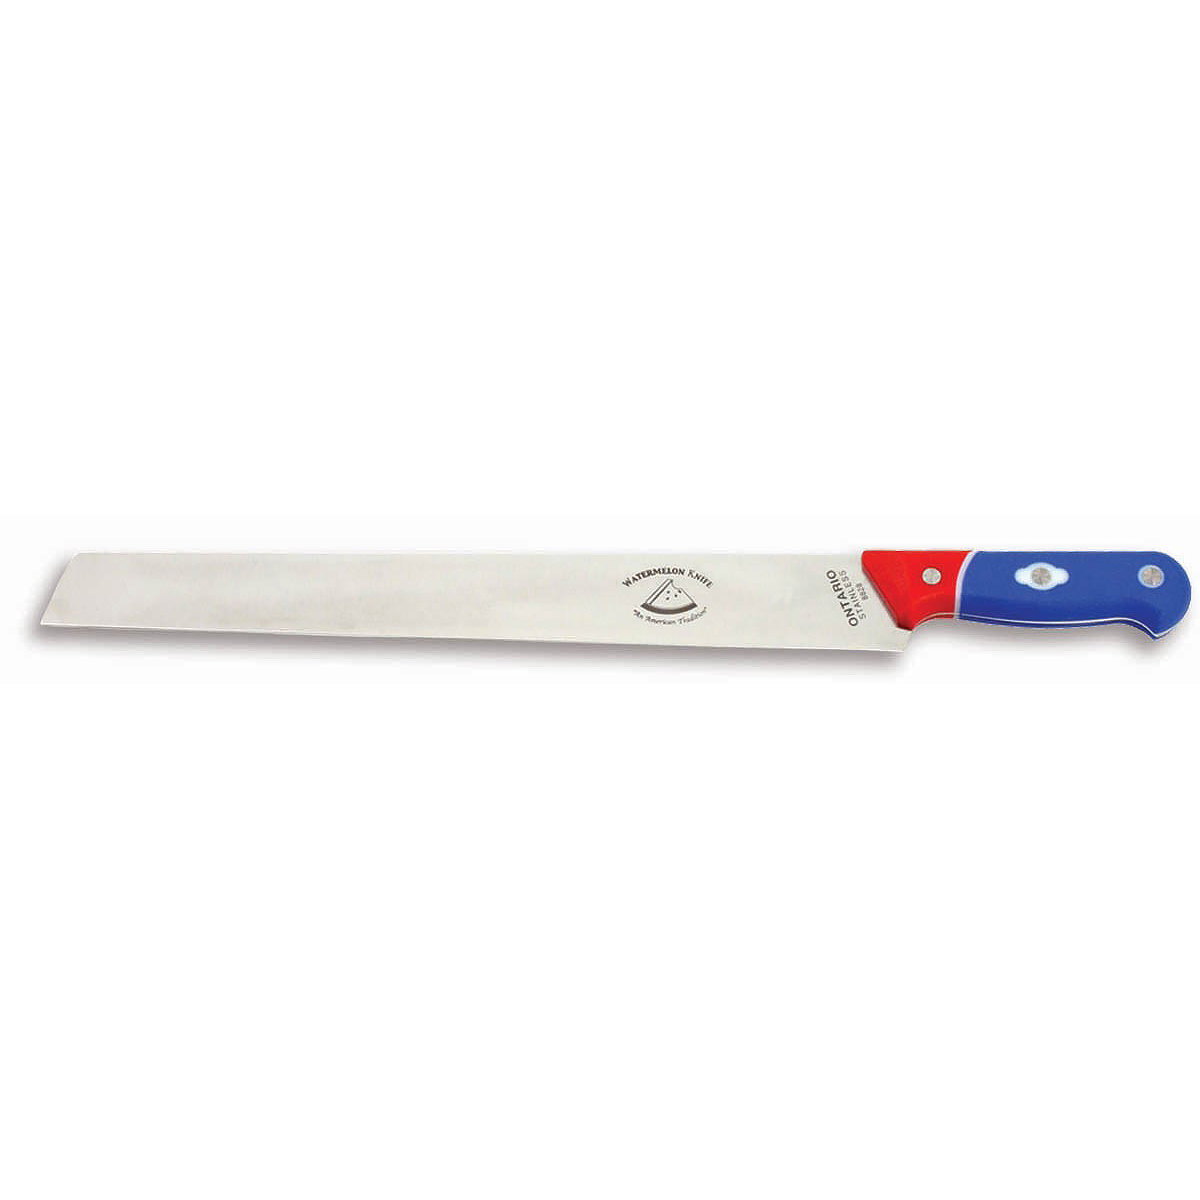 Арбузный нож OKC, сталь 440C, рукоять термопластик Zytel®, красно-синий - фото 4